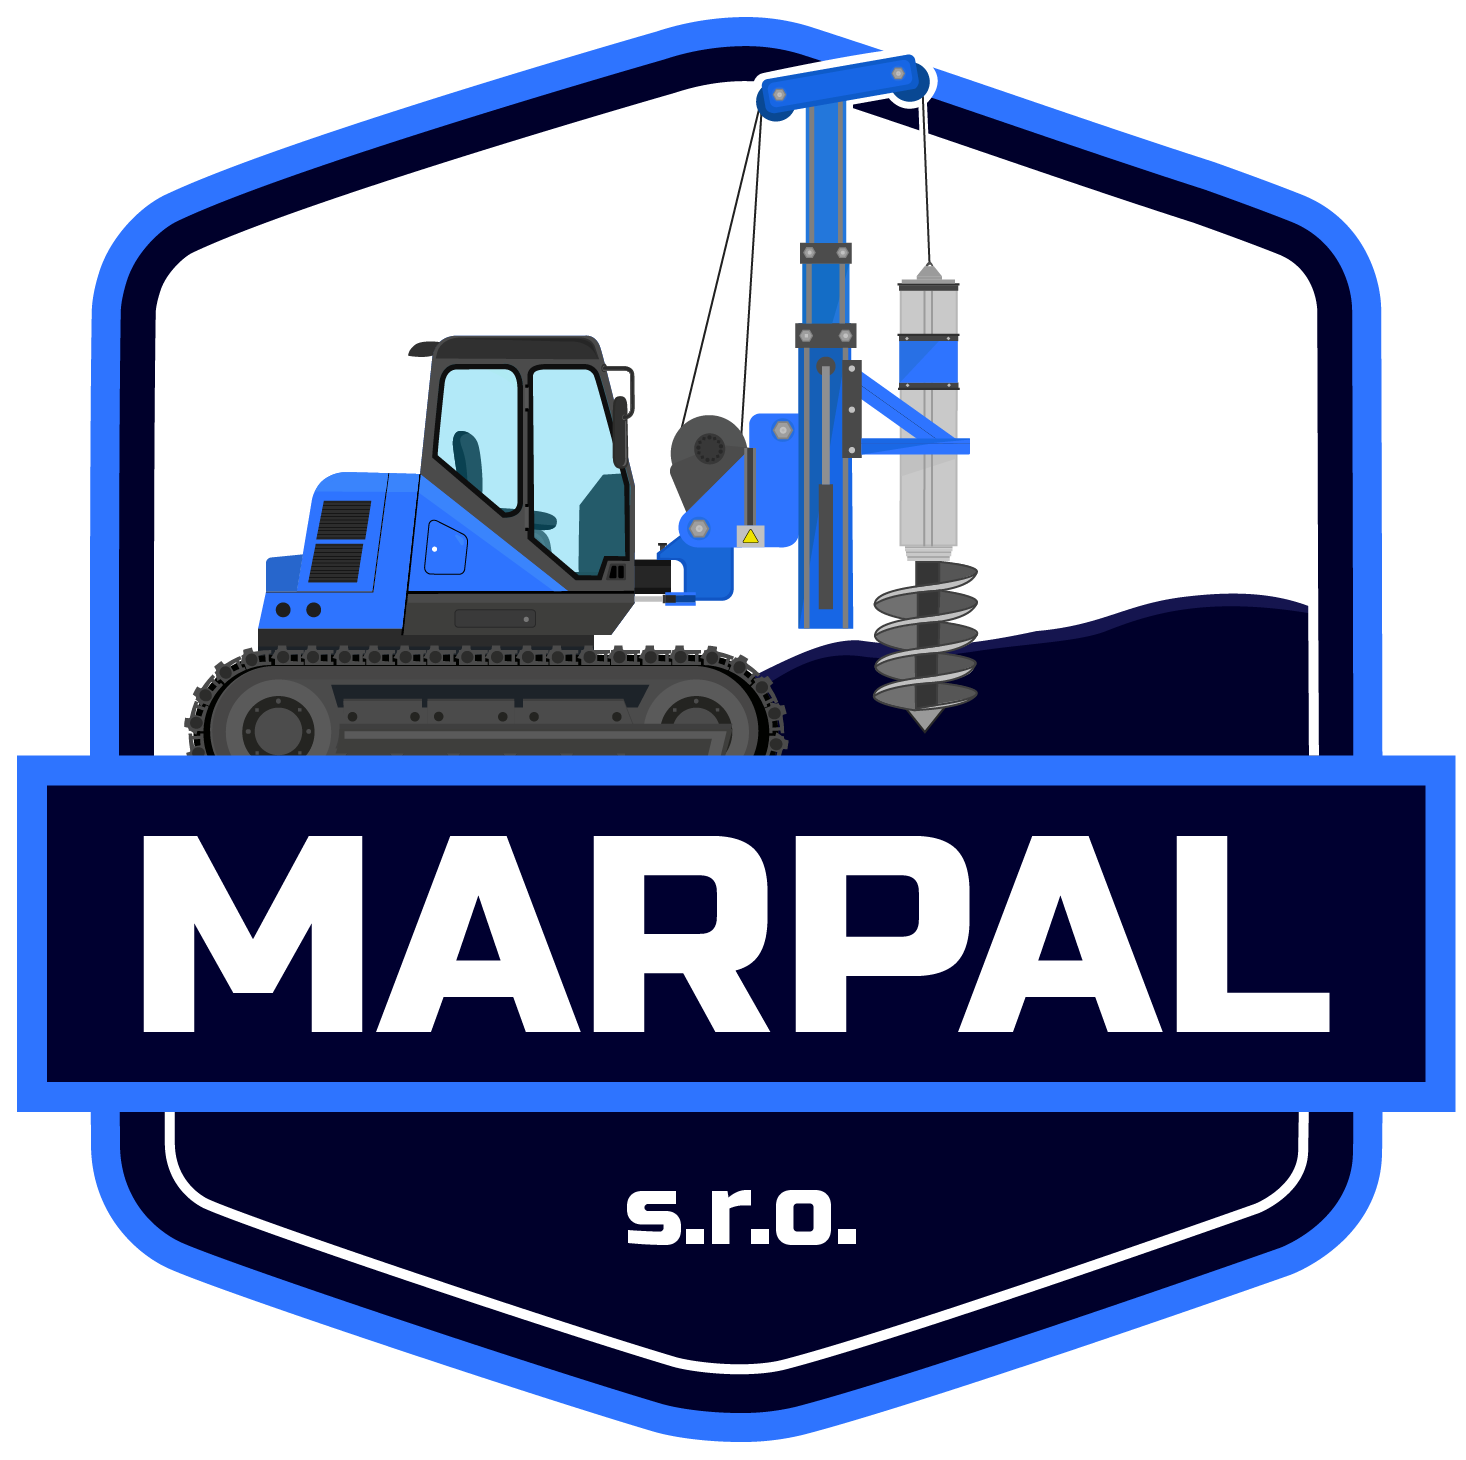 Marpal logo